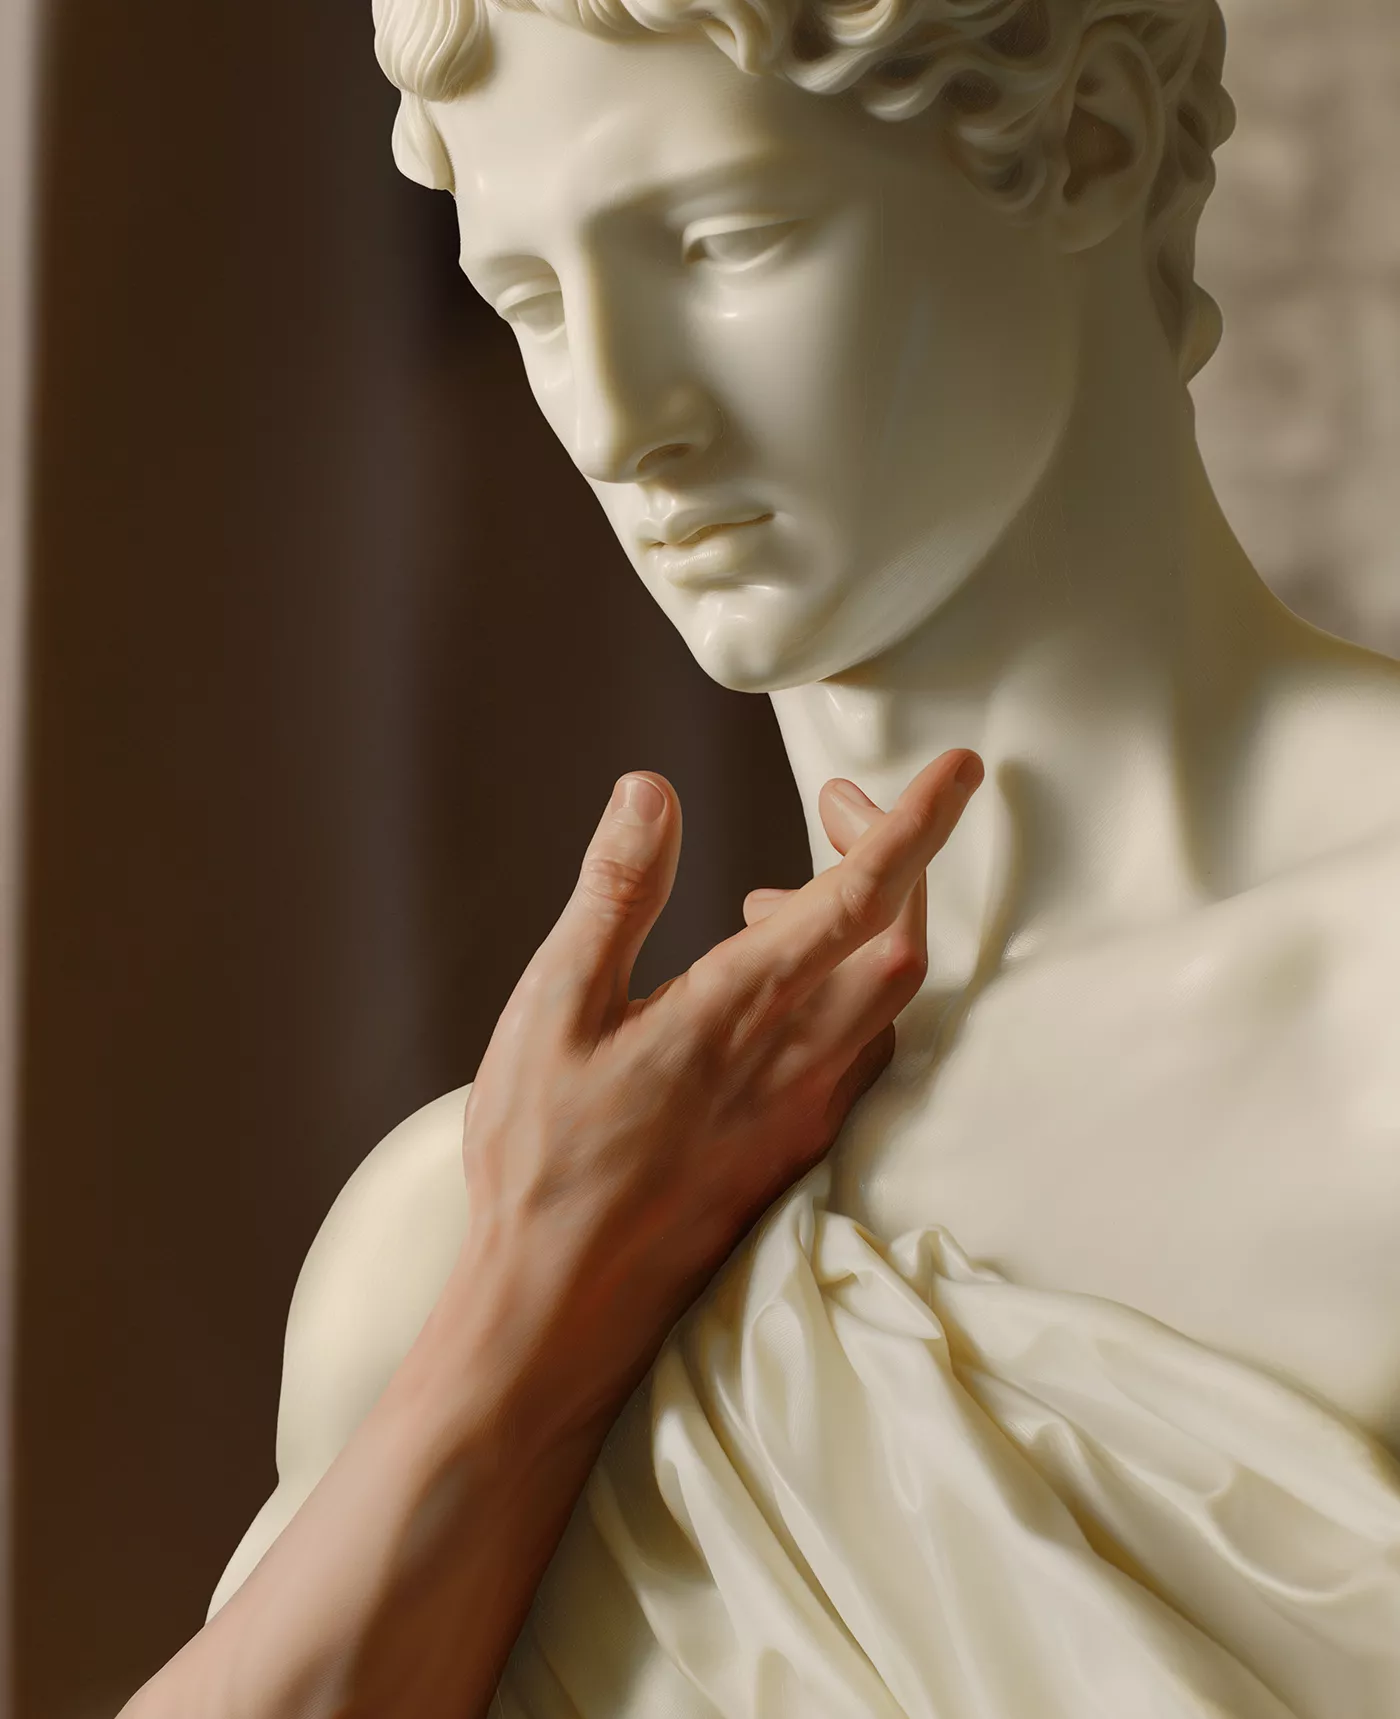 Amb una mà masculina acariciant delicadament una escultura clàssica representem l’evolució i la presència de l’homosexualitat al llarg de la història